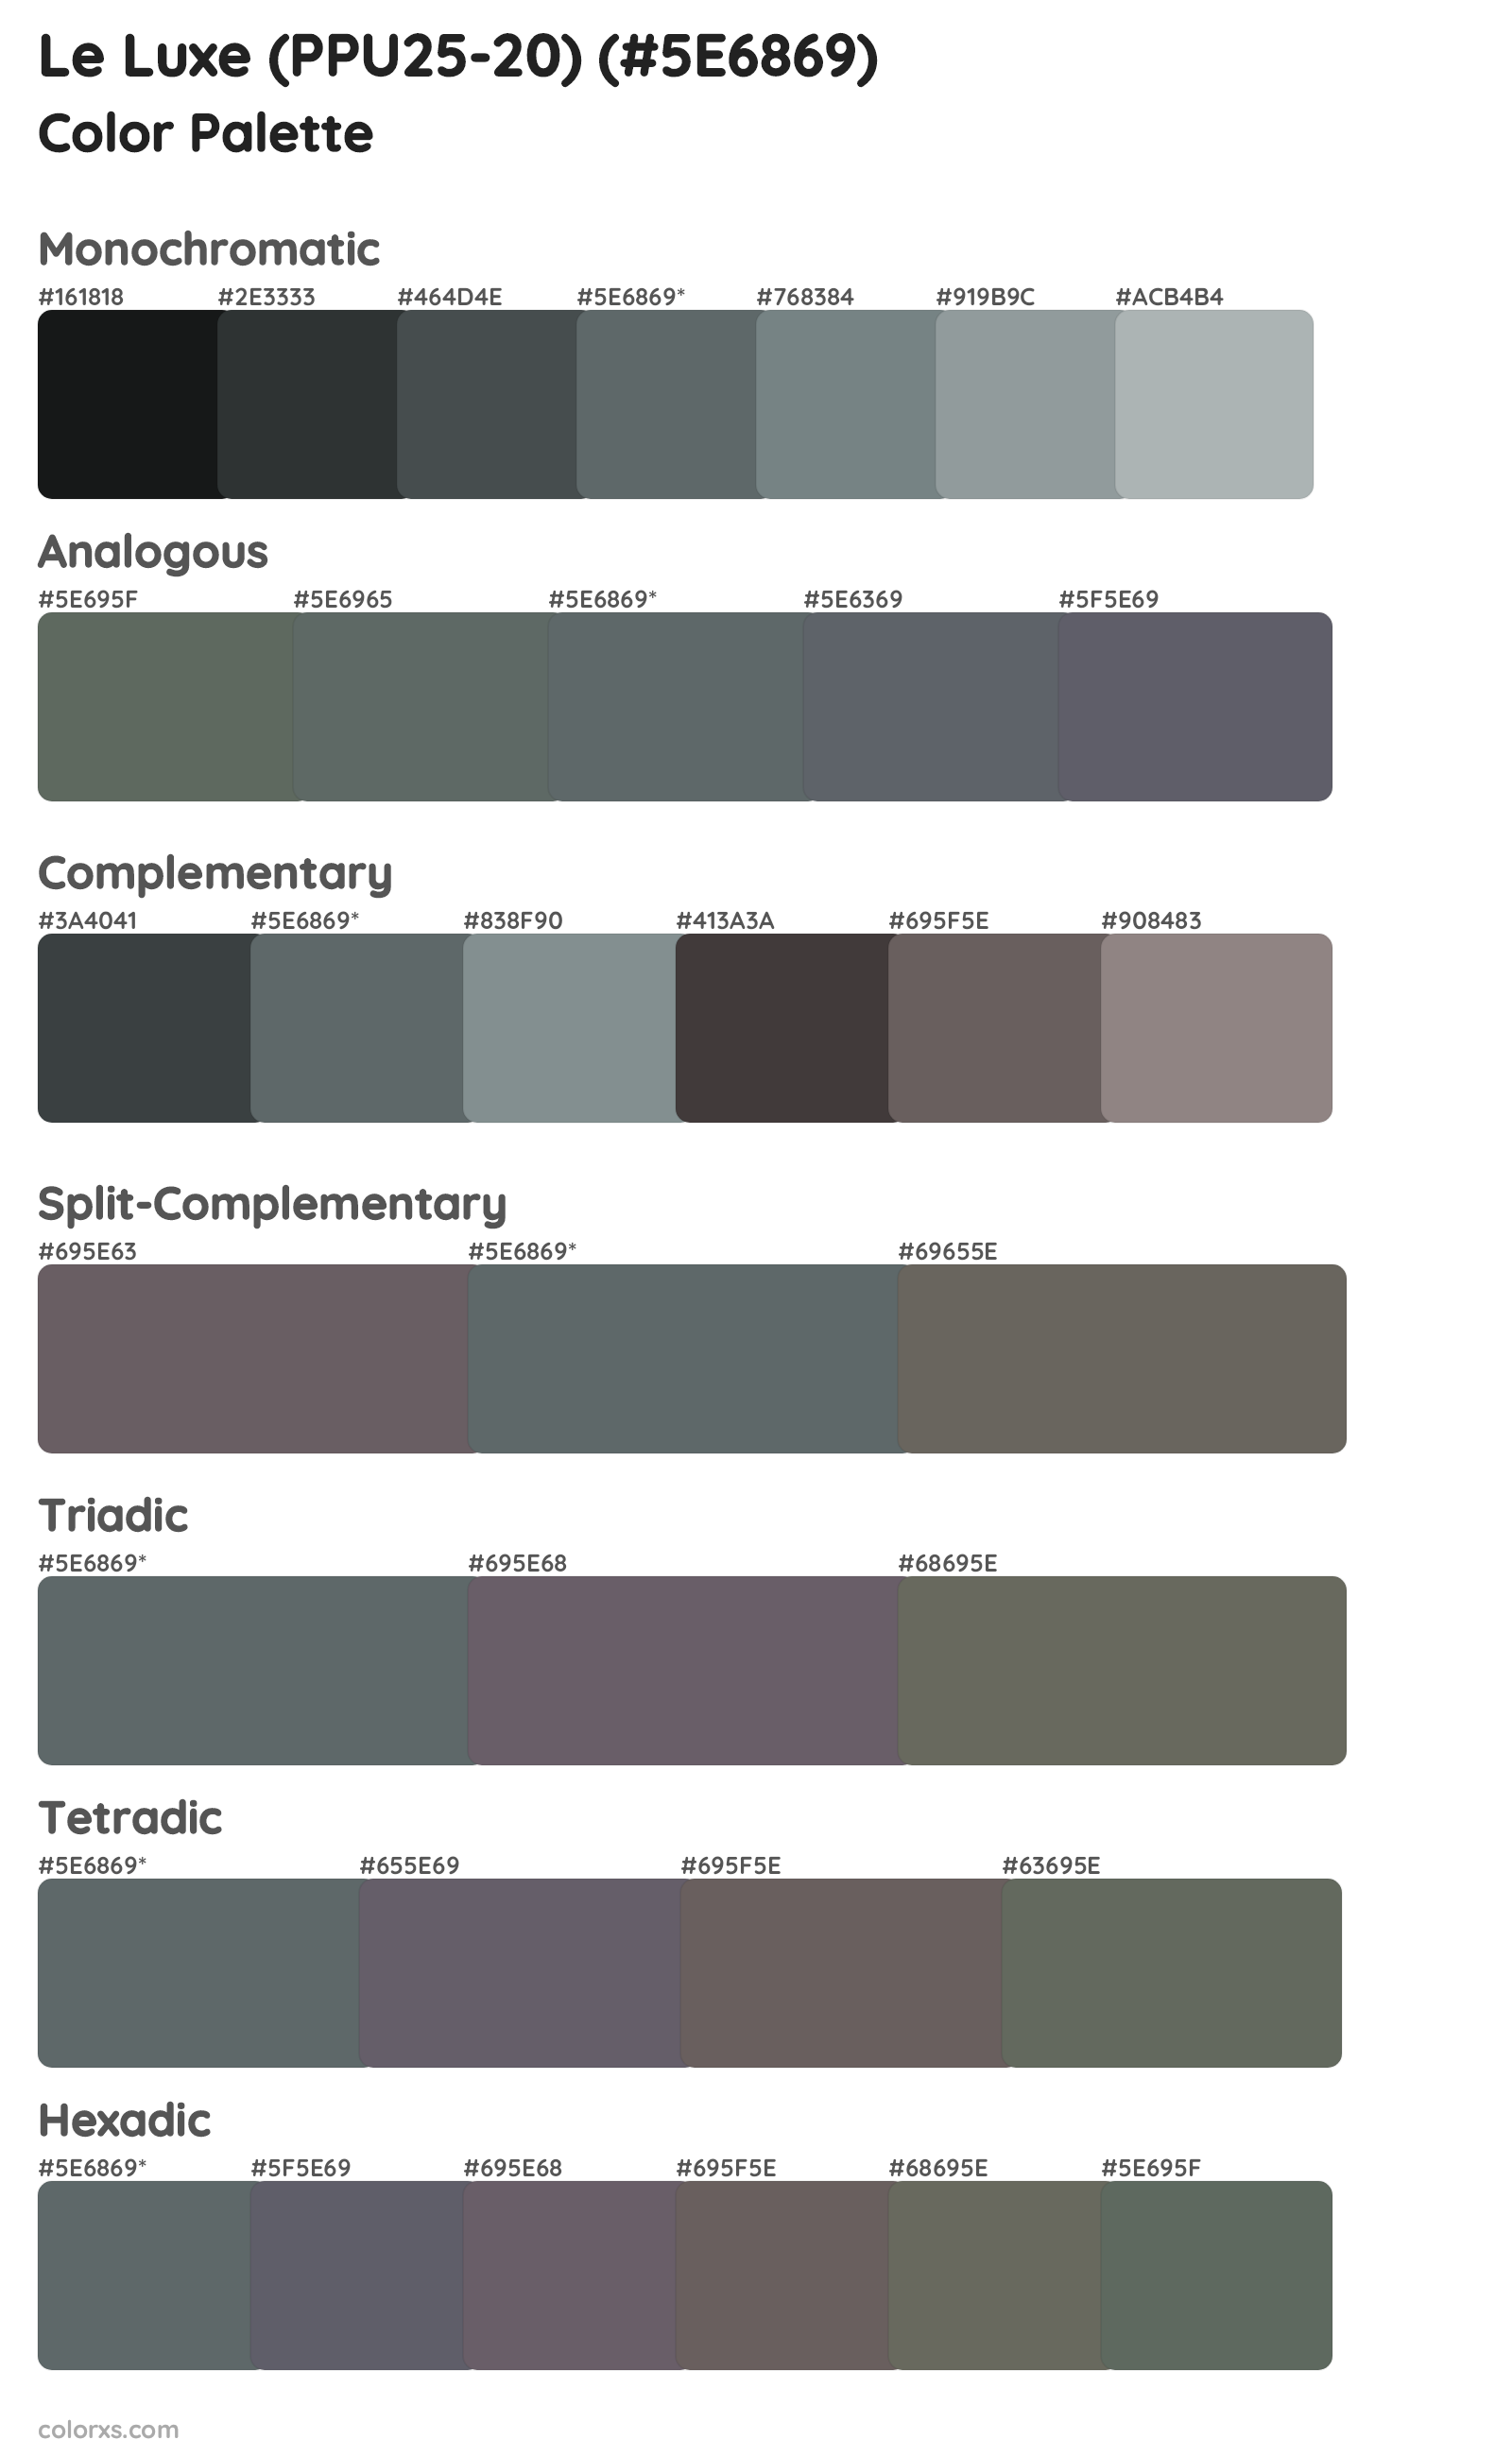 Le Luxe (PPU25-20) Color Scheme Palettes